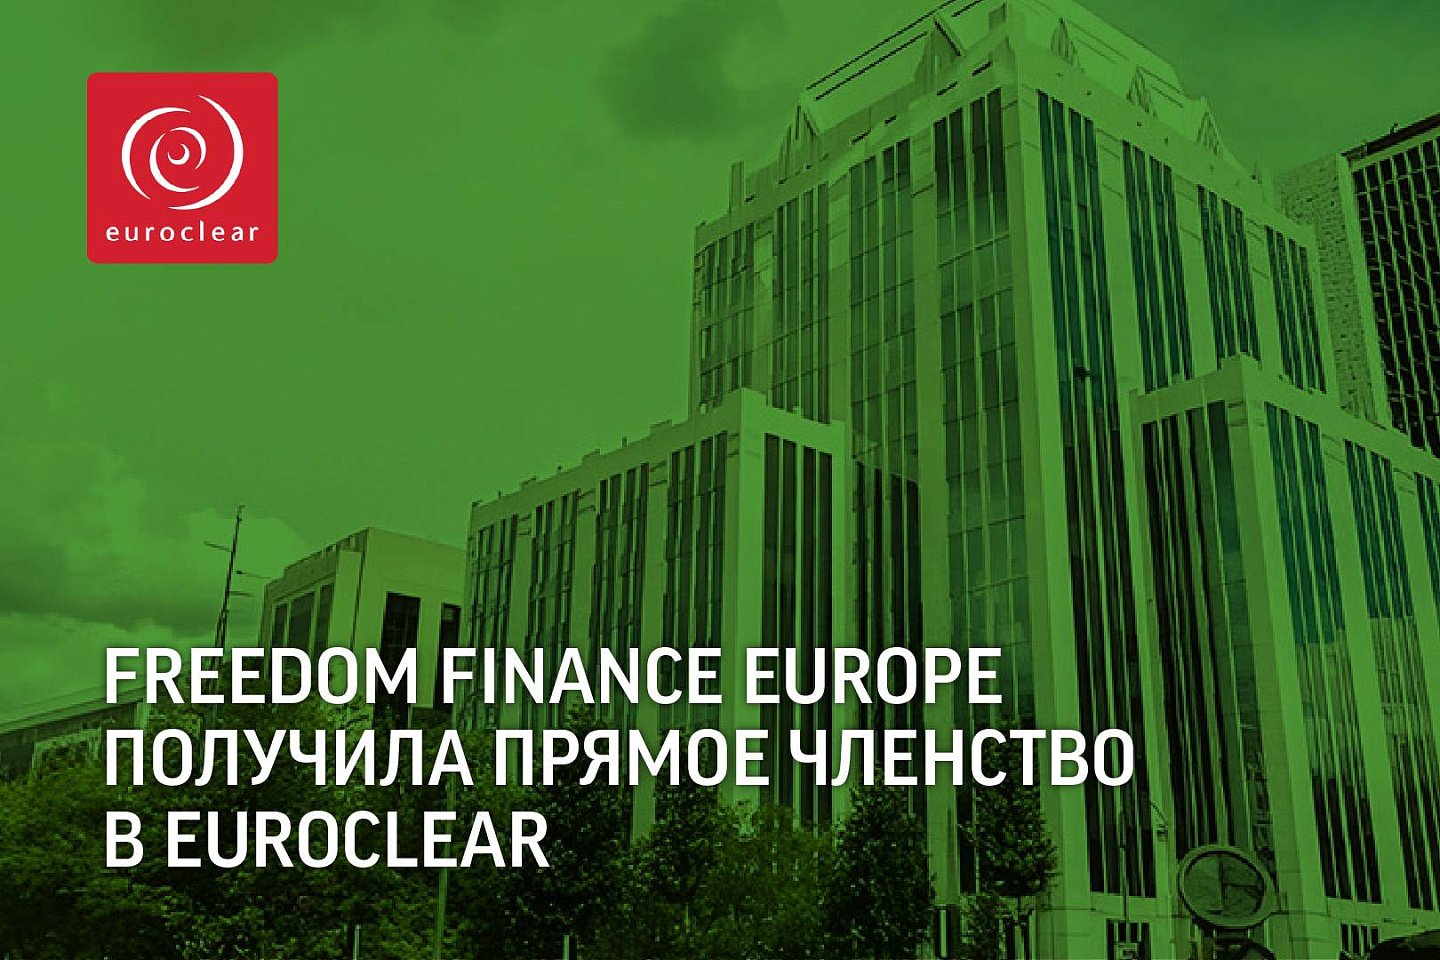 Партнерские материалы / Freedom Finance Europe получила прямое членство в Euroclear